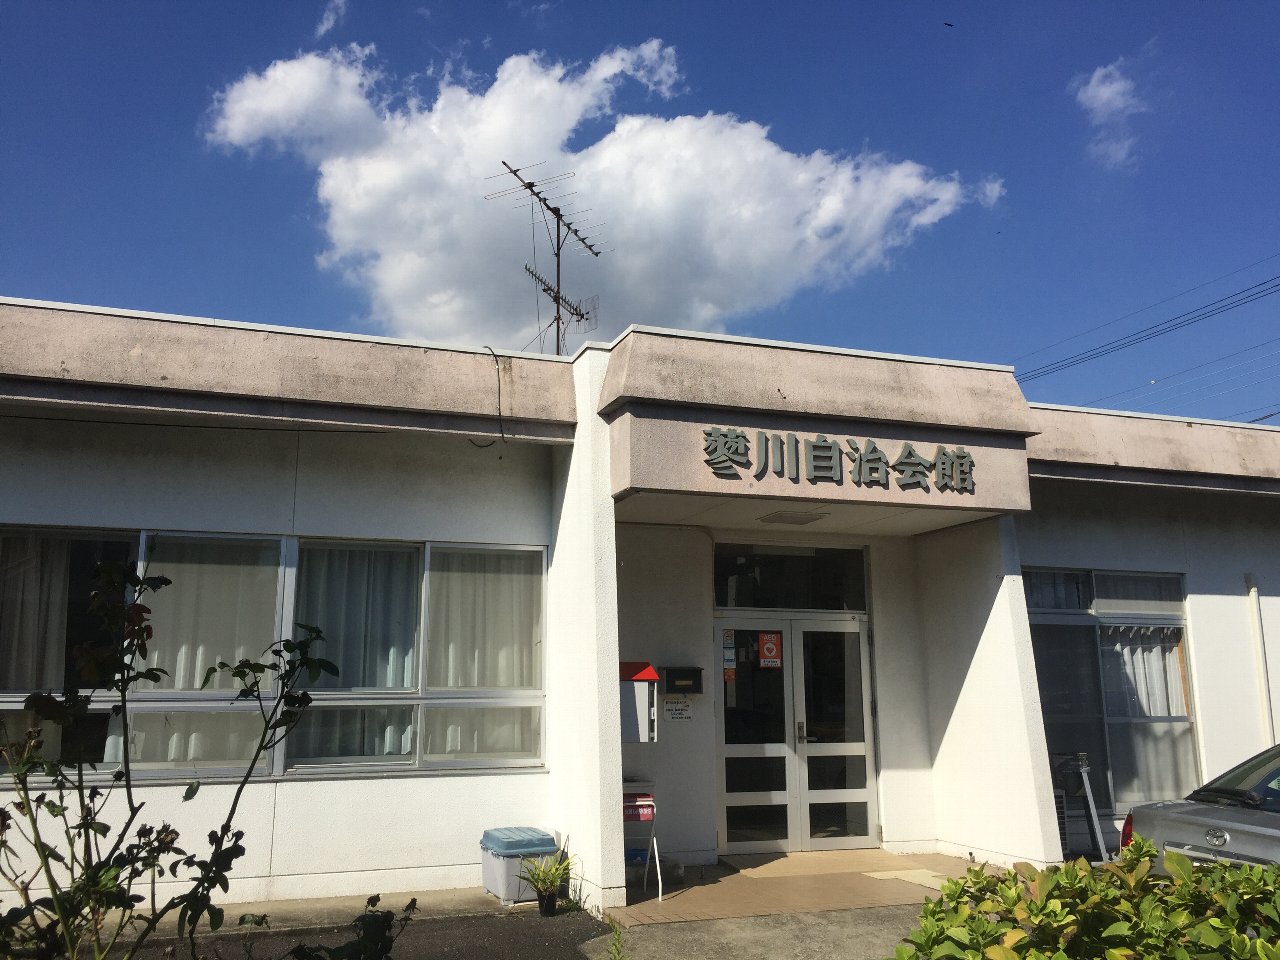 蓼川自治会館の入り口をアップで写した写真